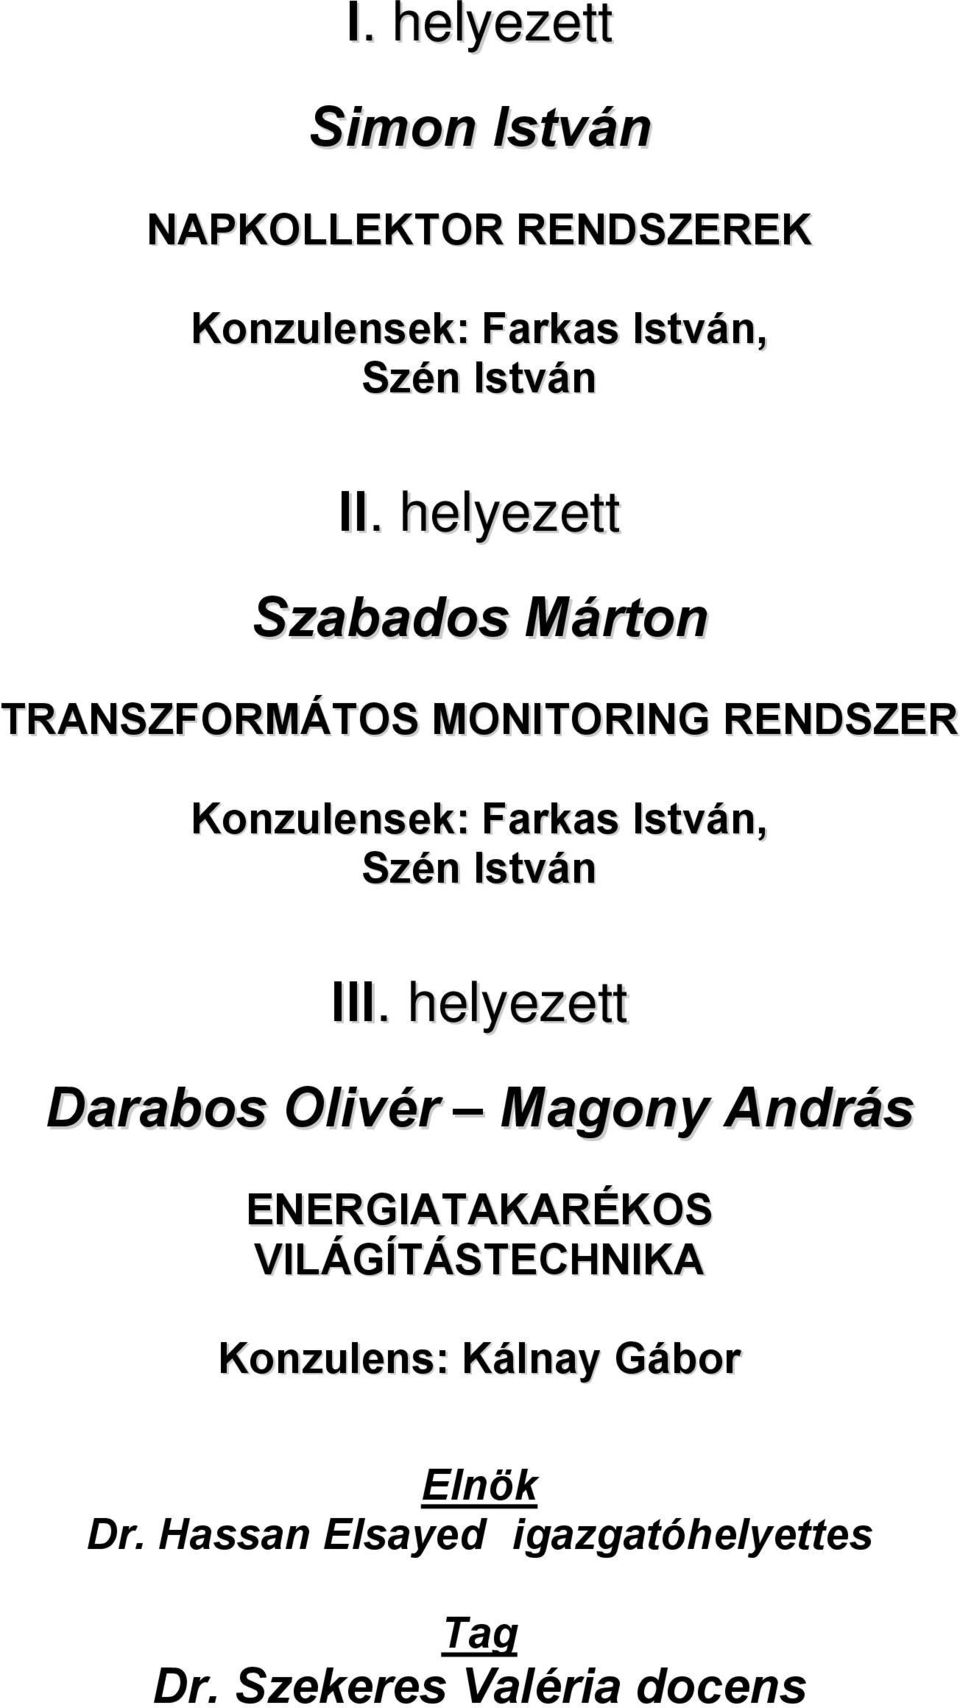 Szén István I Darabos Olivér Magony András ENERGIATAKARÉKOS VILÁGÍTÁSTECHNIKA